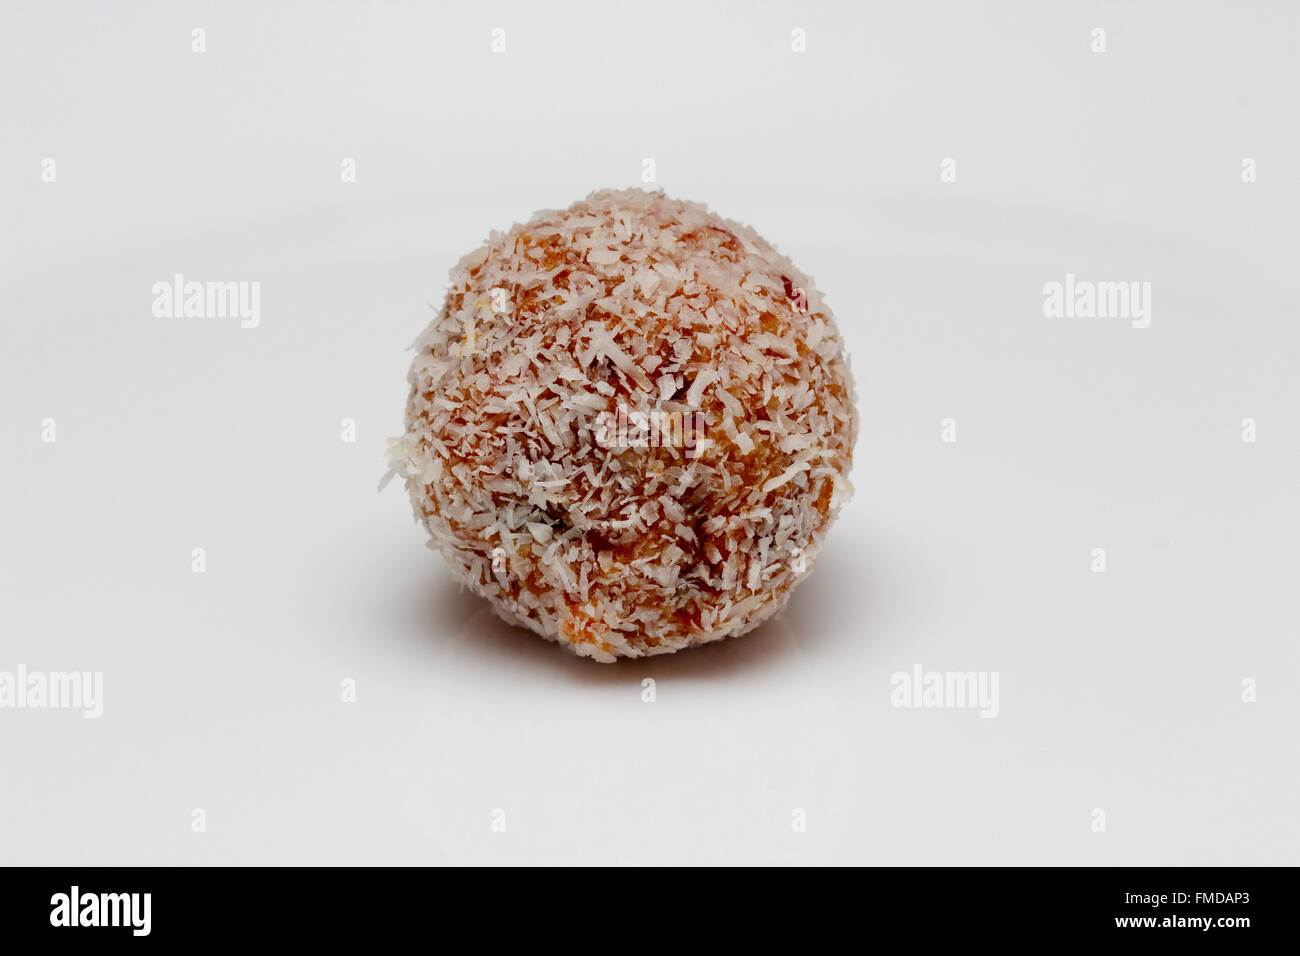 Superfrucht gesunde Nuss und Trockenobst Snack Ball mit Kokosnuss Stockfoto